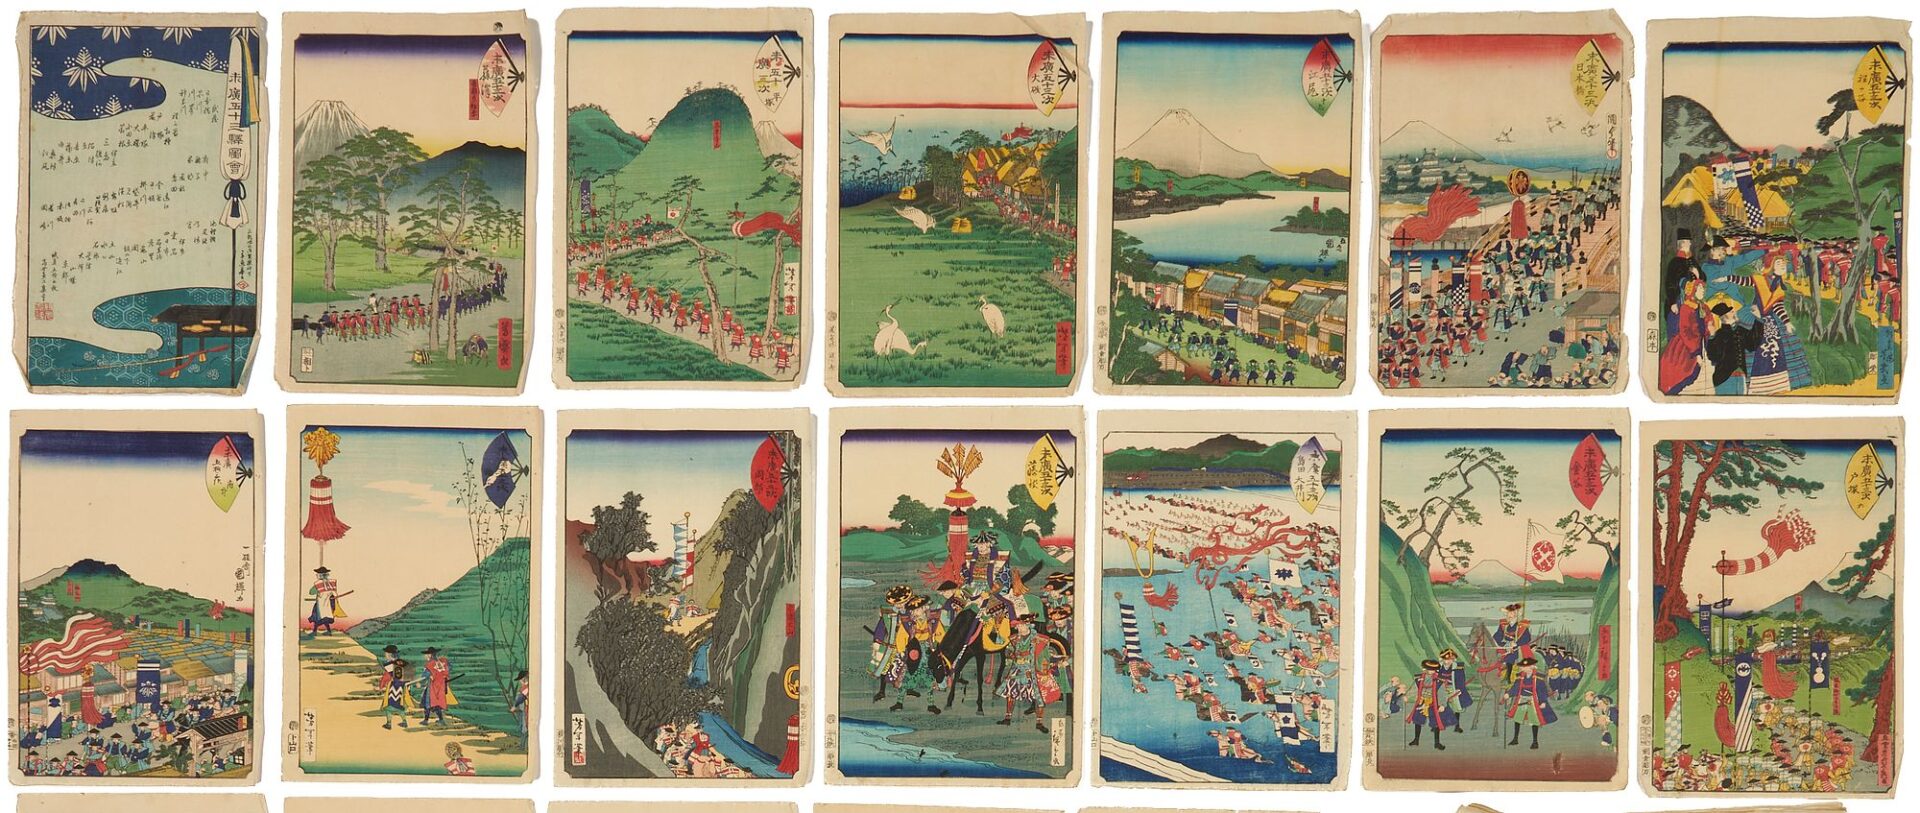 Lot 24: Rare Yoshitoshi Japanese Woodblock Print Album, Fan Tokaido, 1865